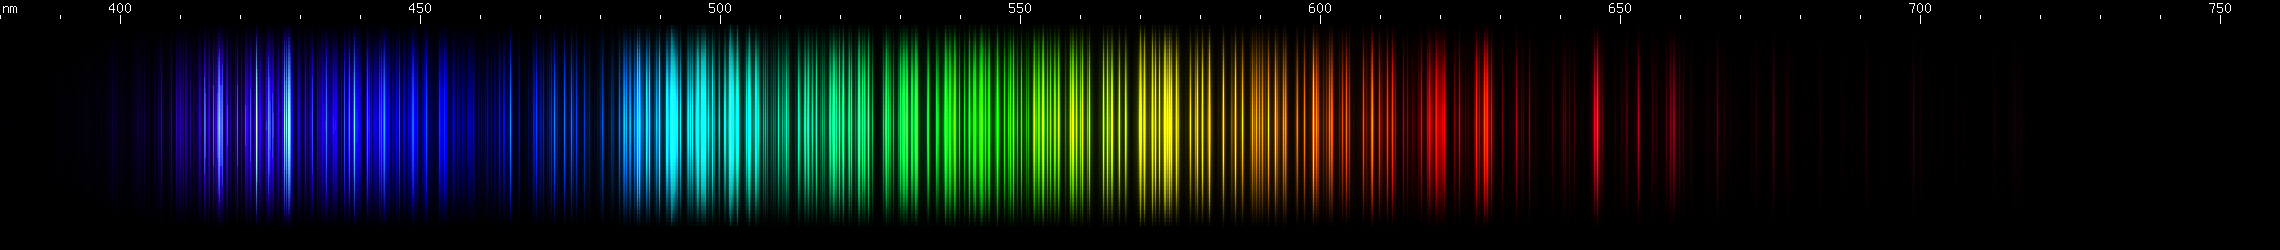 Spectral Lines of Thorium